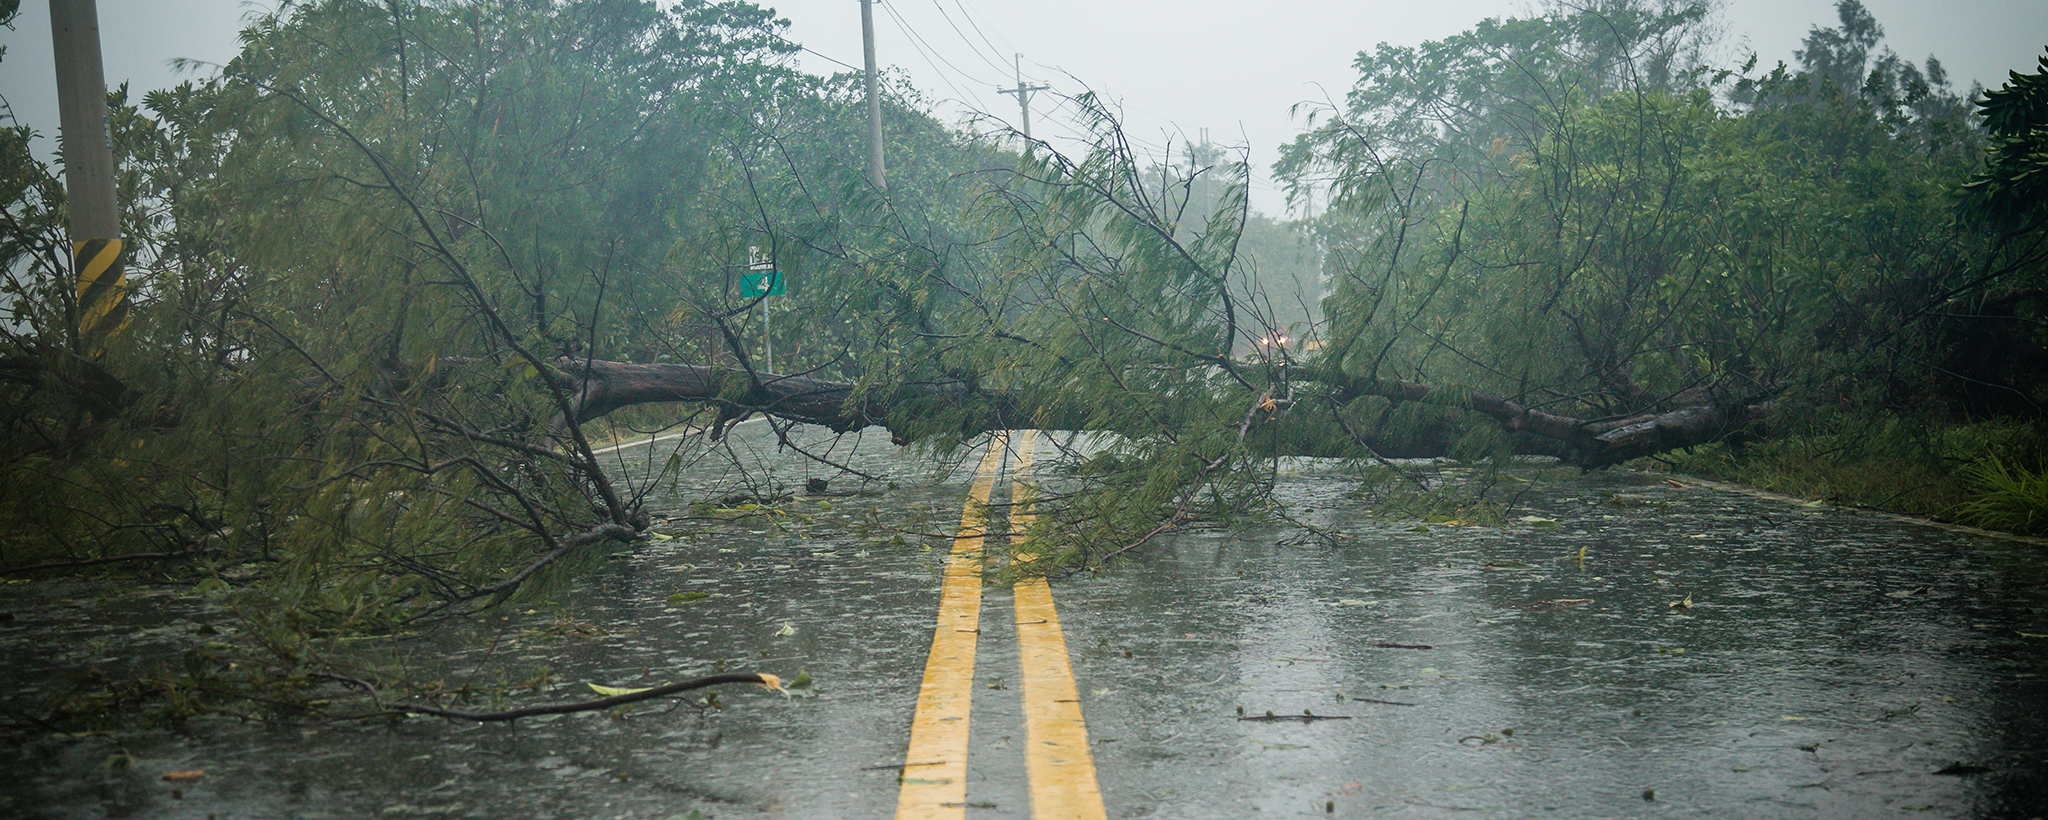 Un árbol caído bloquea un camino durante una tormenta de lluvia